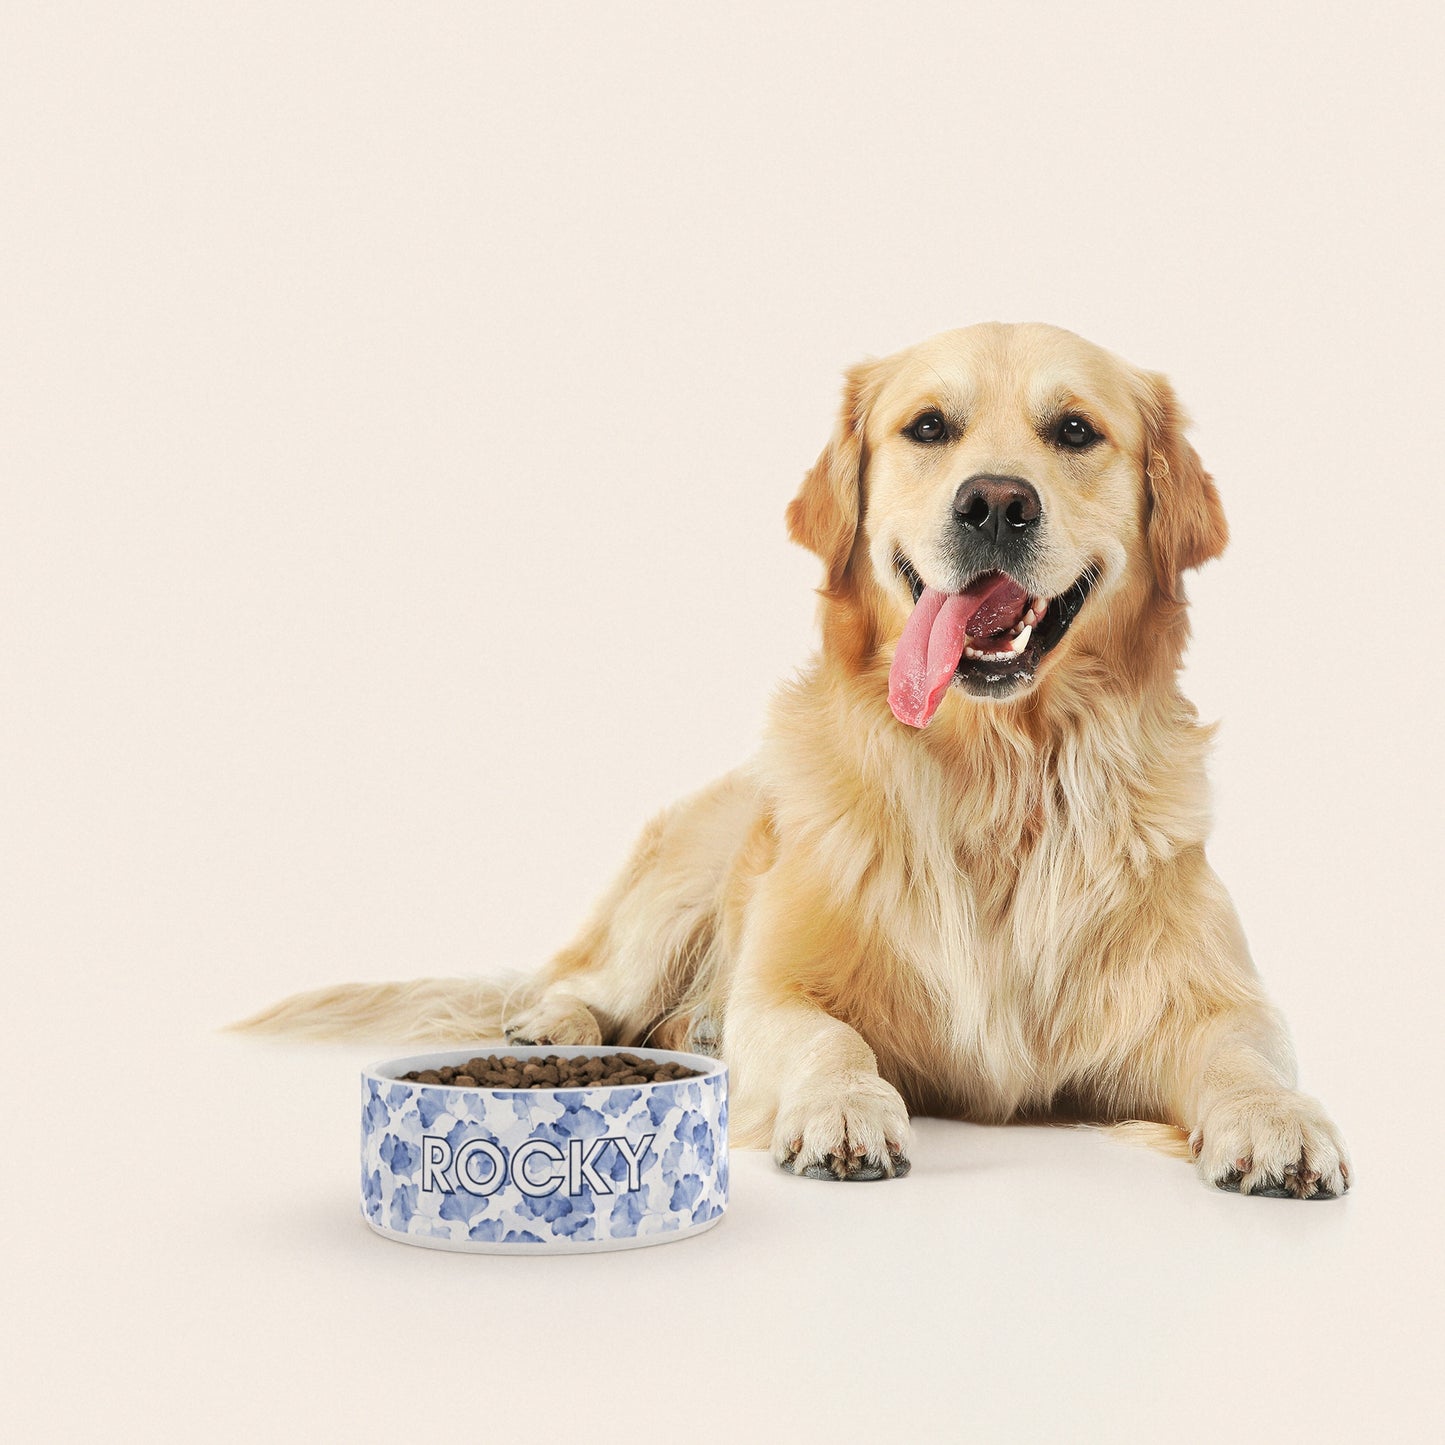 Un golden retriever assis à côté d'un bol pour chien au motif Ginkgo Bleu personnalisé avec le nom ROCKY